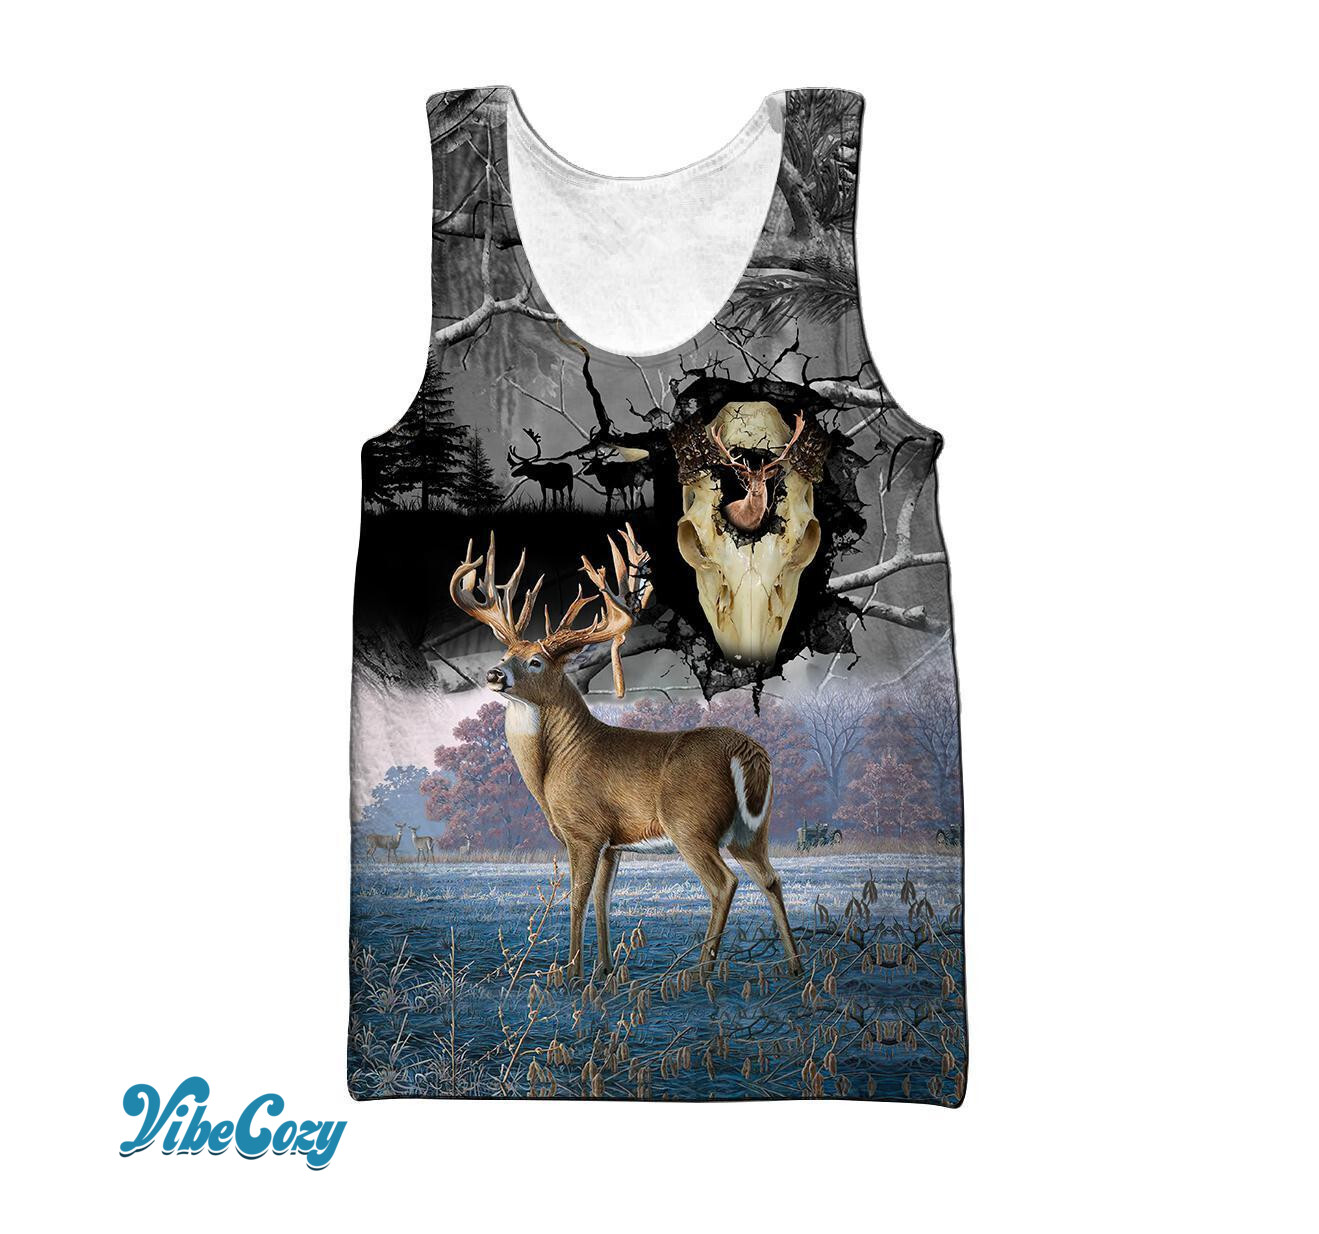 3D All Over Print Deer Hunting Hoodie TN070802